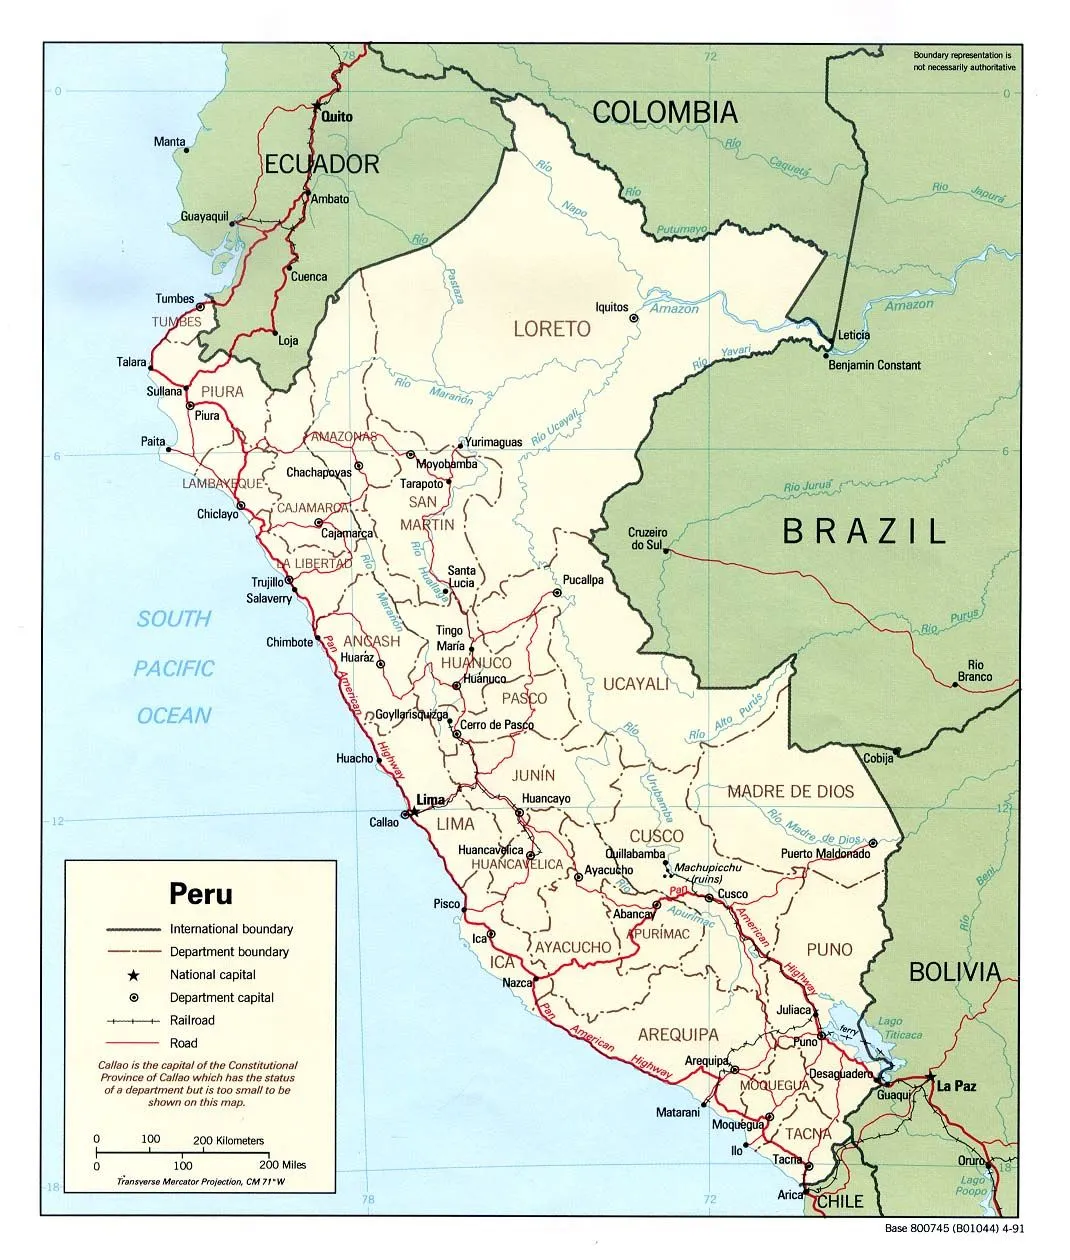 Mapa Politico de Peru